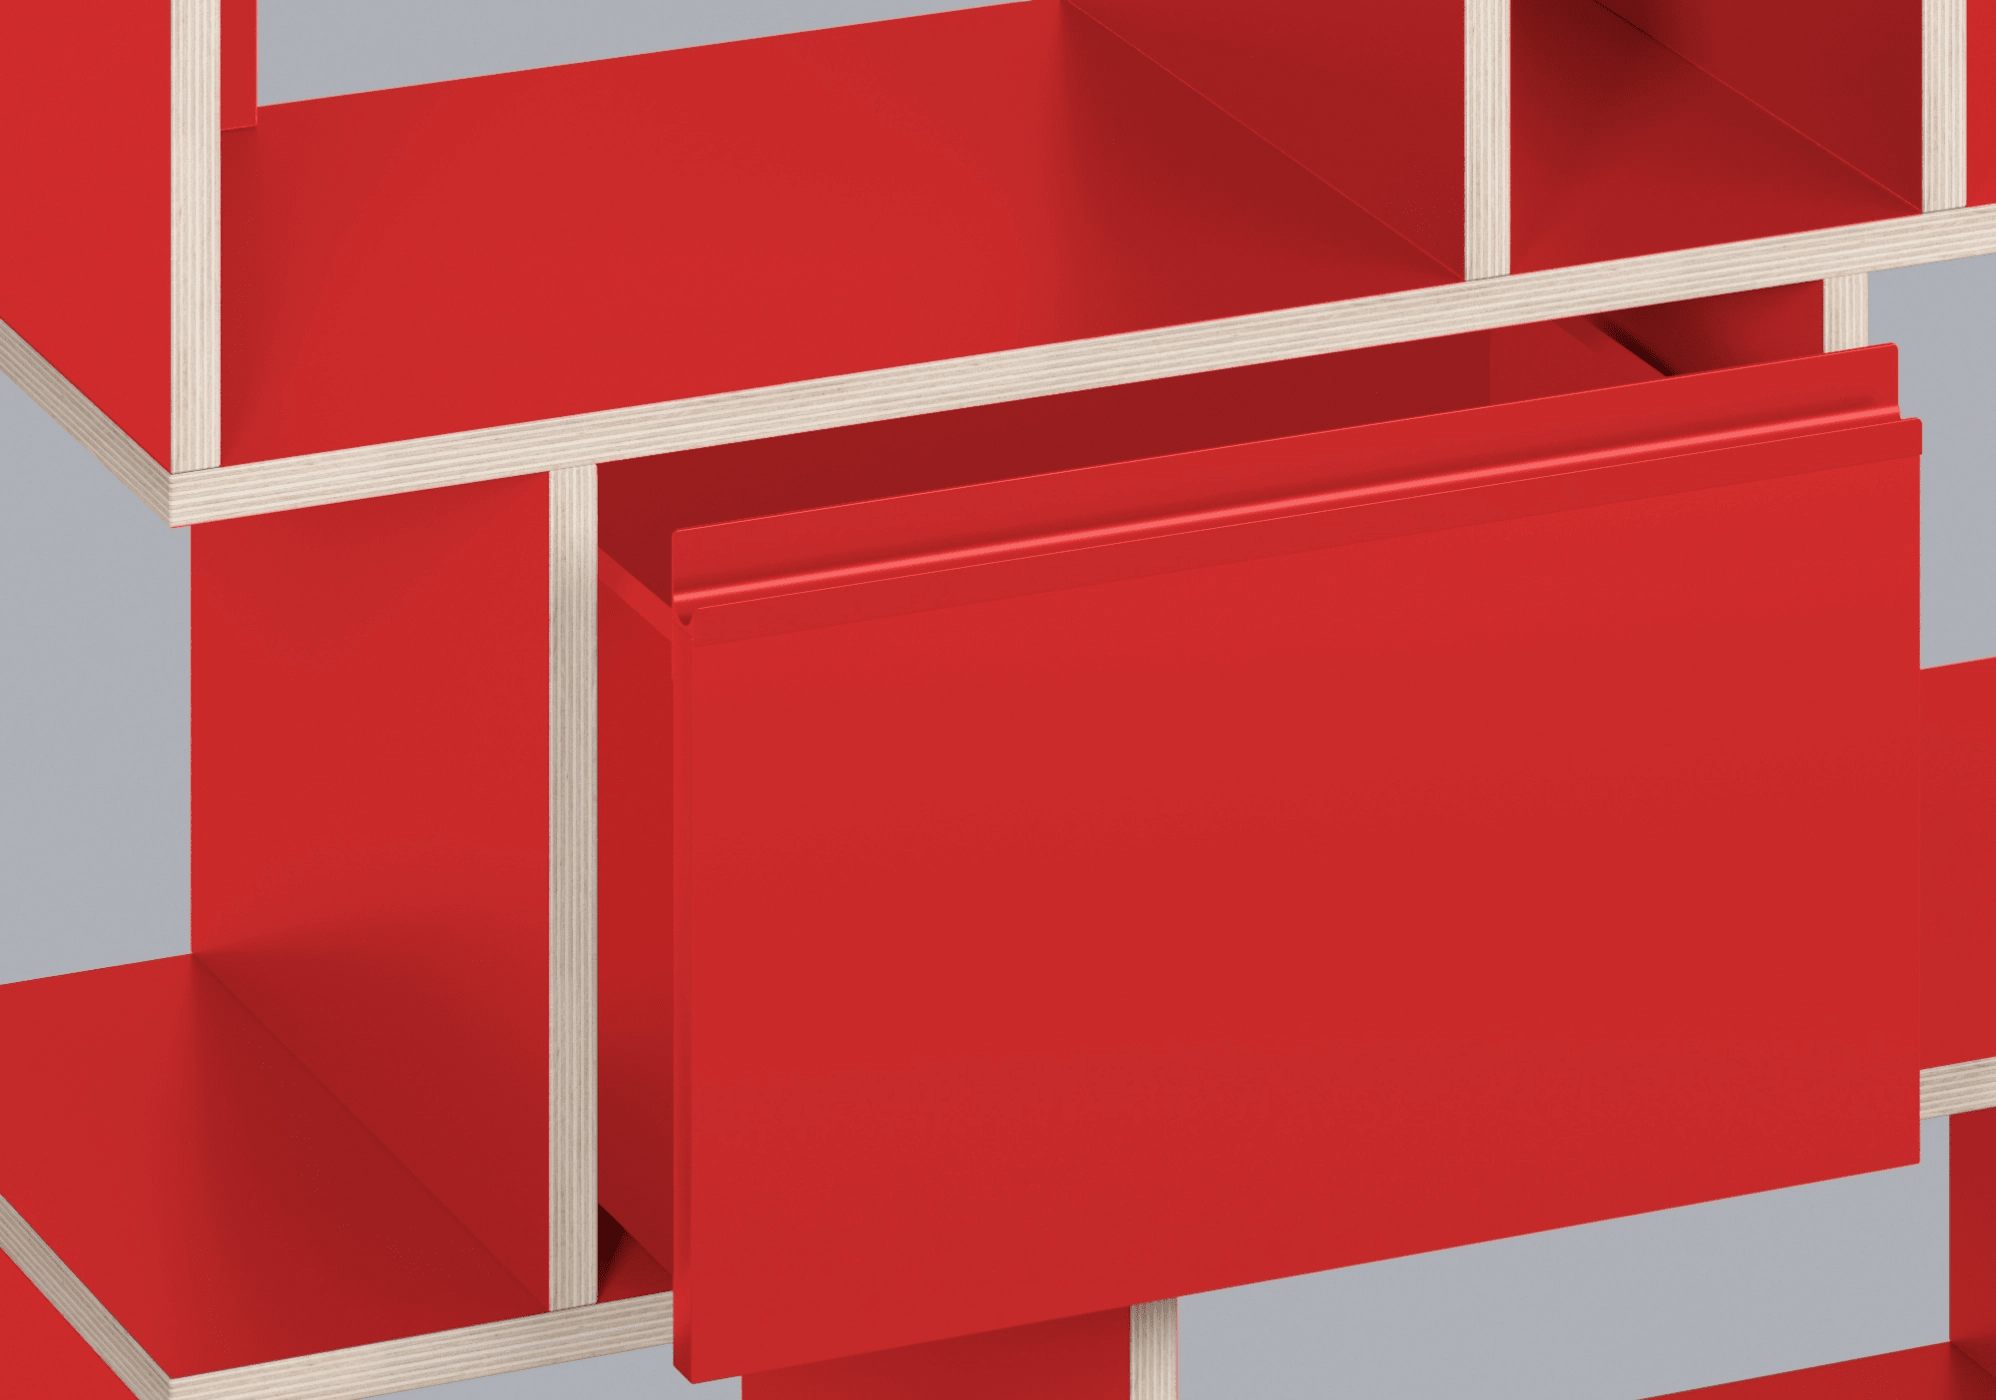 Ancha Contrachapado en Rojo Clásico 6-cajones Cajonera madera contrachapada - 220x83x32cm 8